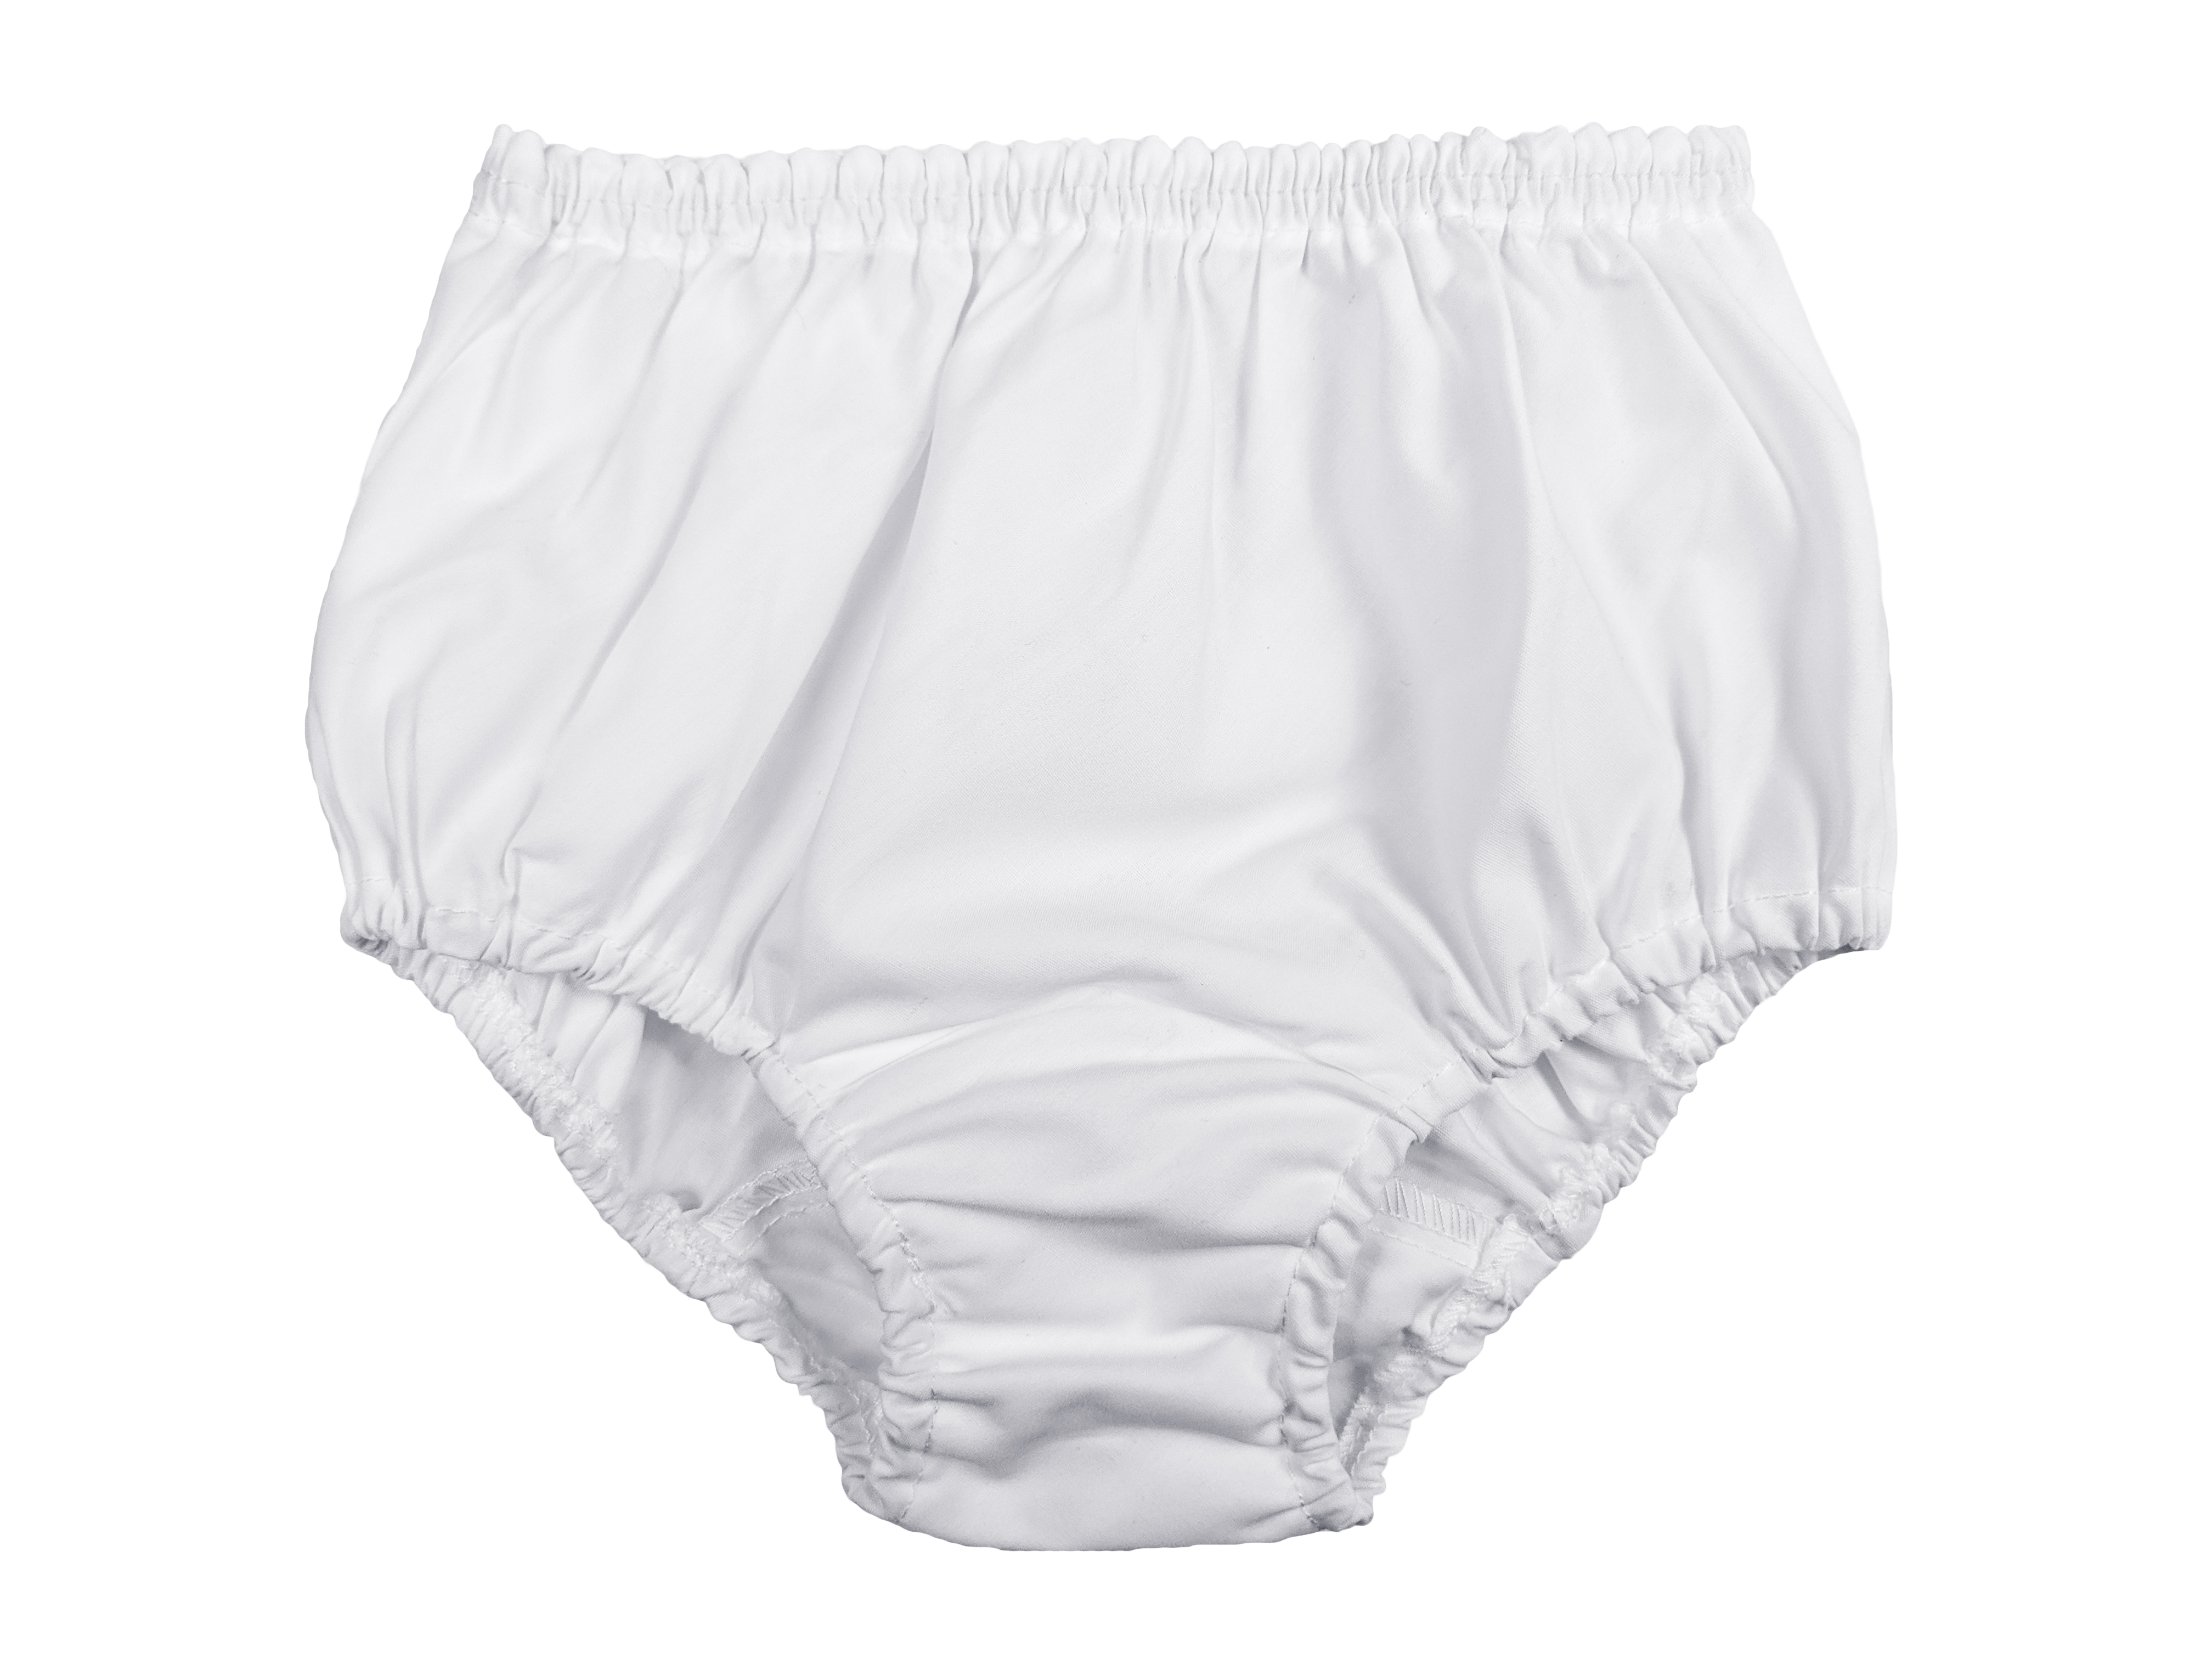 Infant & Girls White Cotton Blend Slip Sizes 6 Months Toddler 8 